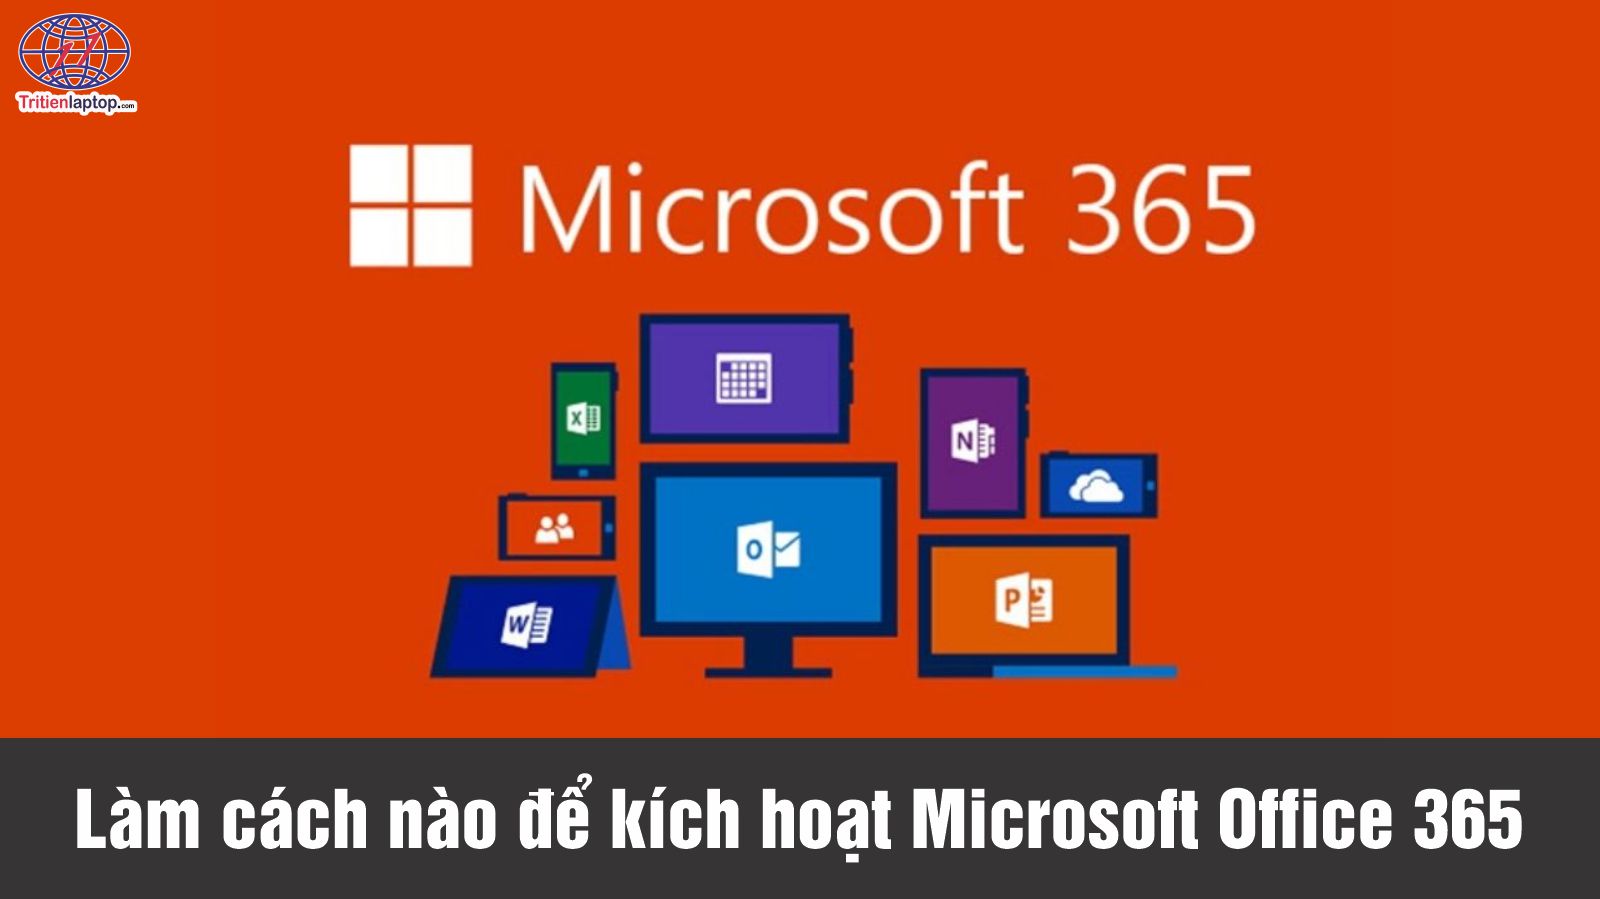 Làm cách nào để kích hoạt Microsoft Office 365 miễn phí?